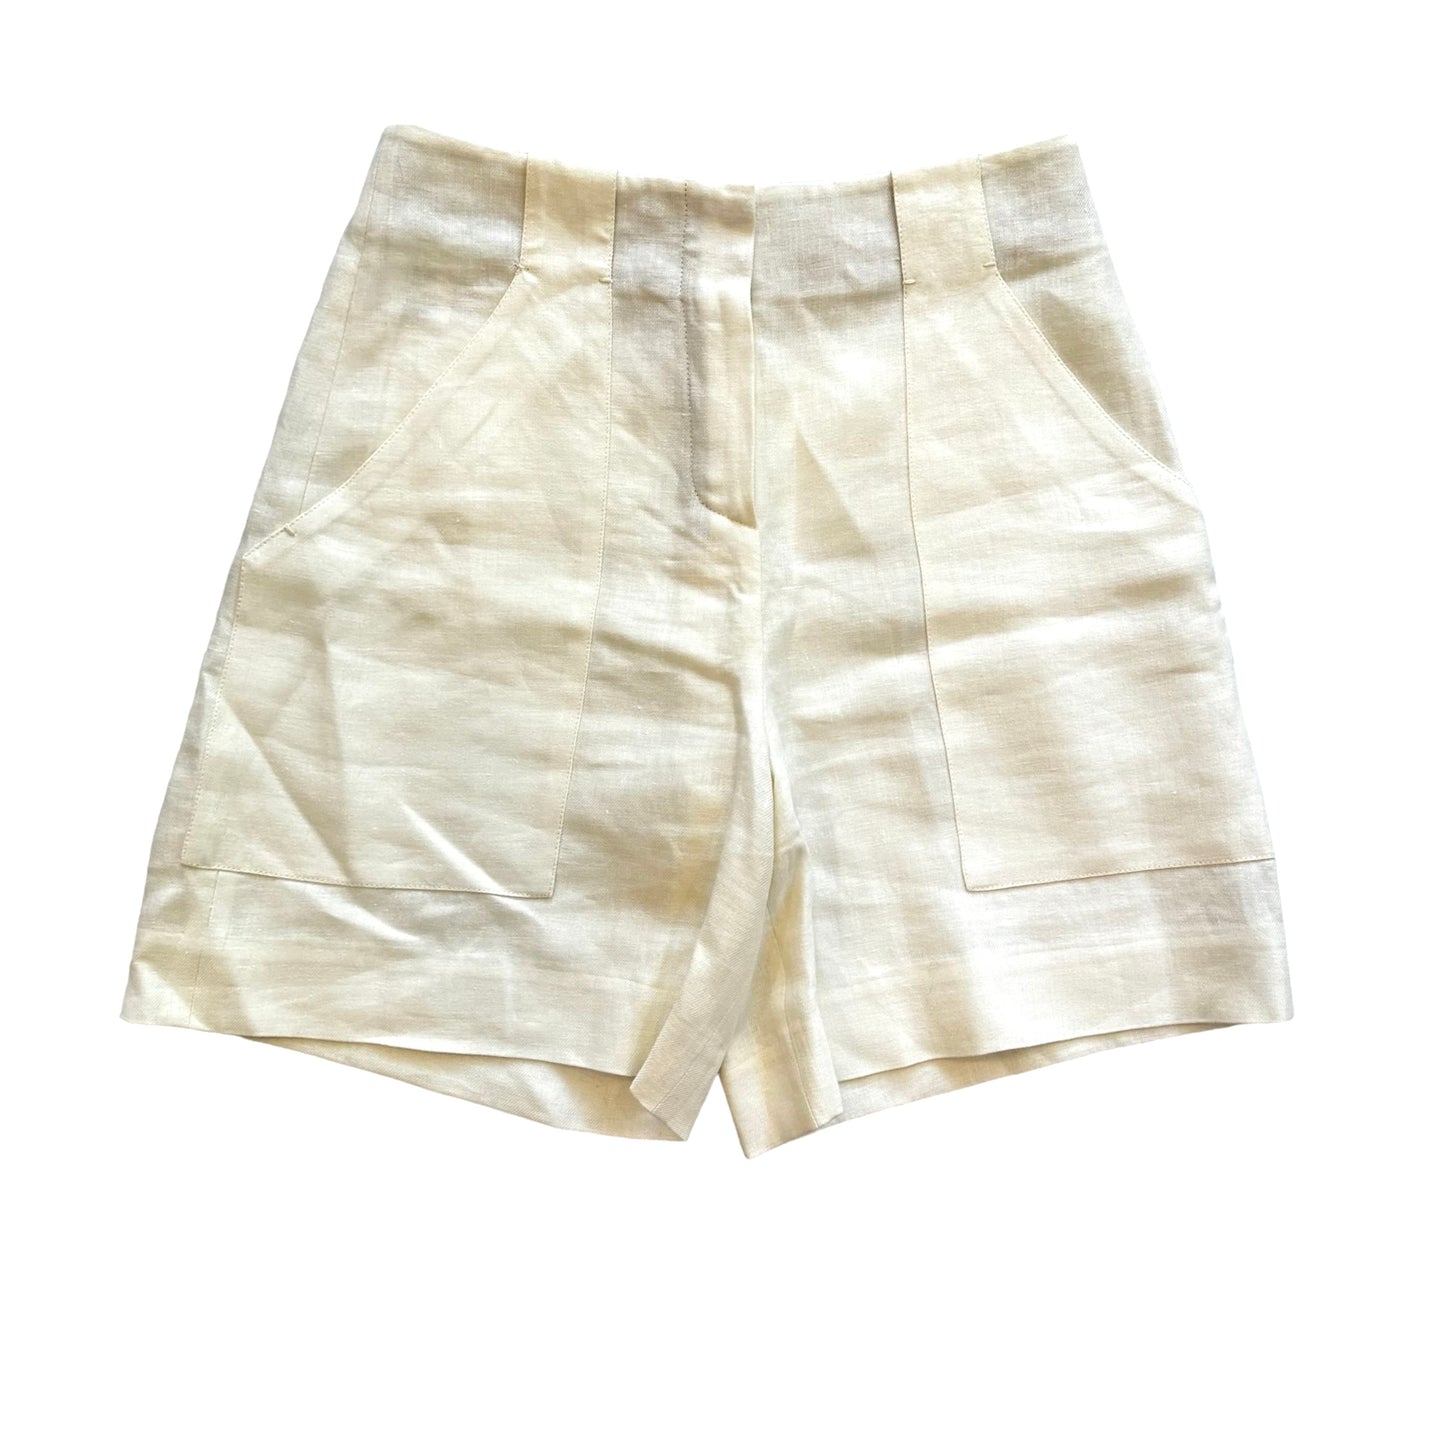 White Linen Shorts - M